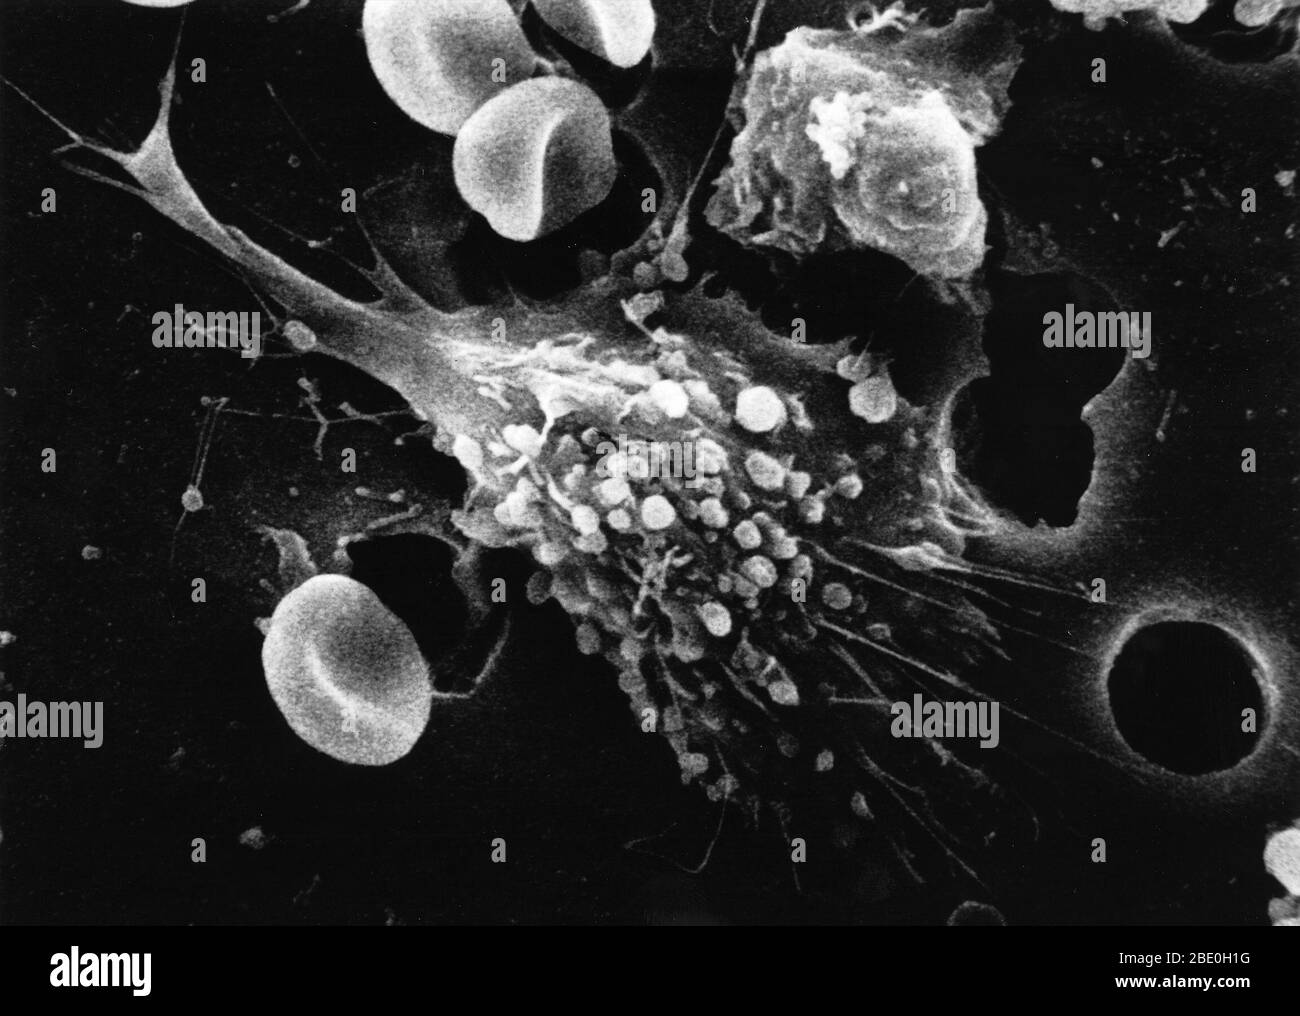 Étape un d'une séquence en six étapes de la mort d'une cellule cancéreuse. Une cellule cancéreuse a migré à travers les trous d'une membrane recouverte par une matrice du haut vers le bas, simulant la migration naturelle d'une cellule cancéreuse envahissante entre, et parfois par, l'endothélium vasculaire. Remarquez les pics ou pseudopodes caractéristiques d'une cellule cancéreuse envahissante. Agrandissement de la photo : 12 000 fois Banque D'Images